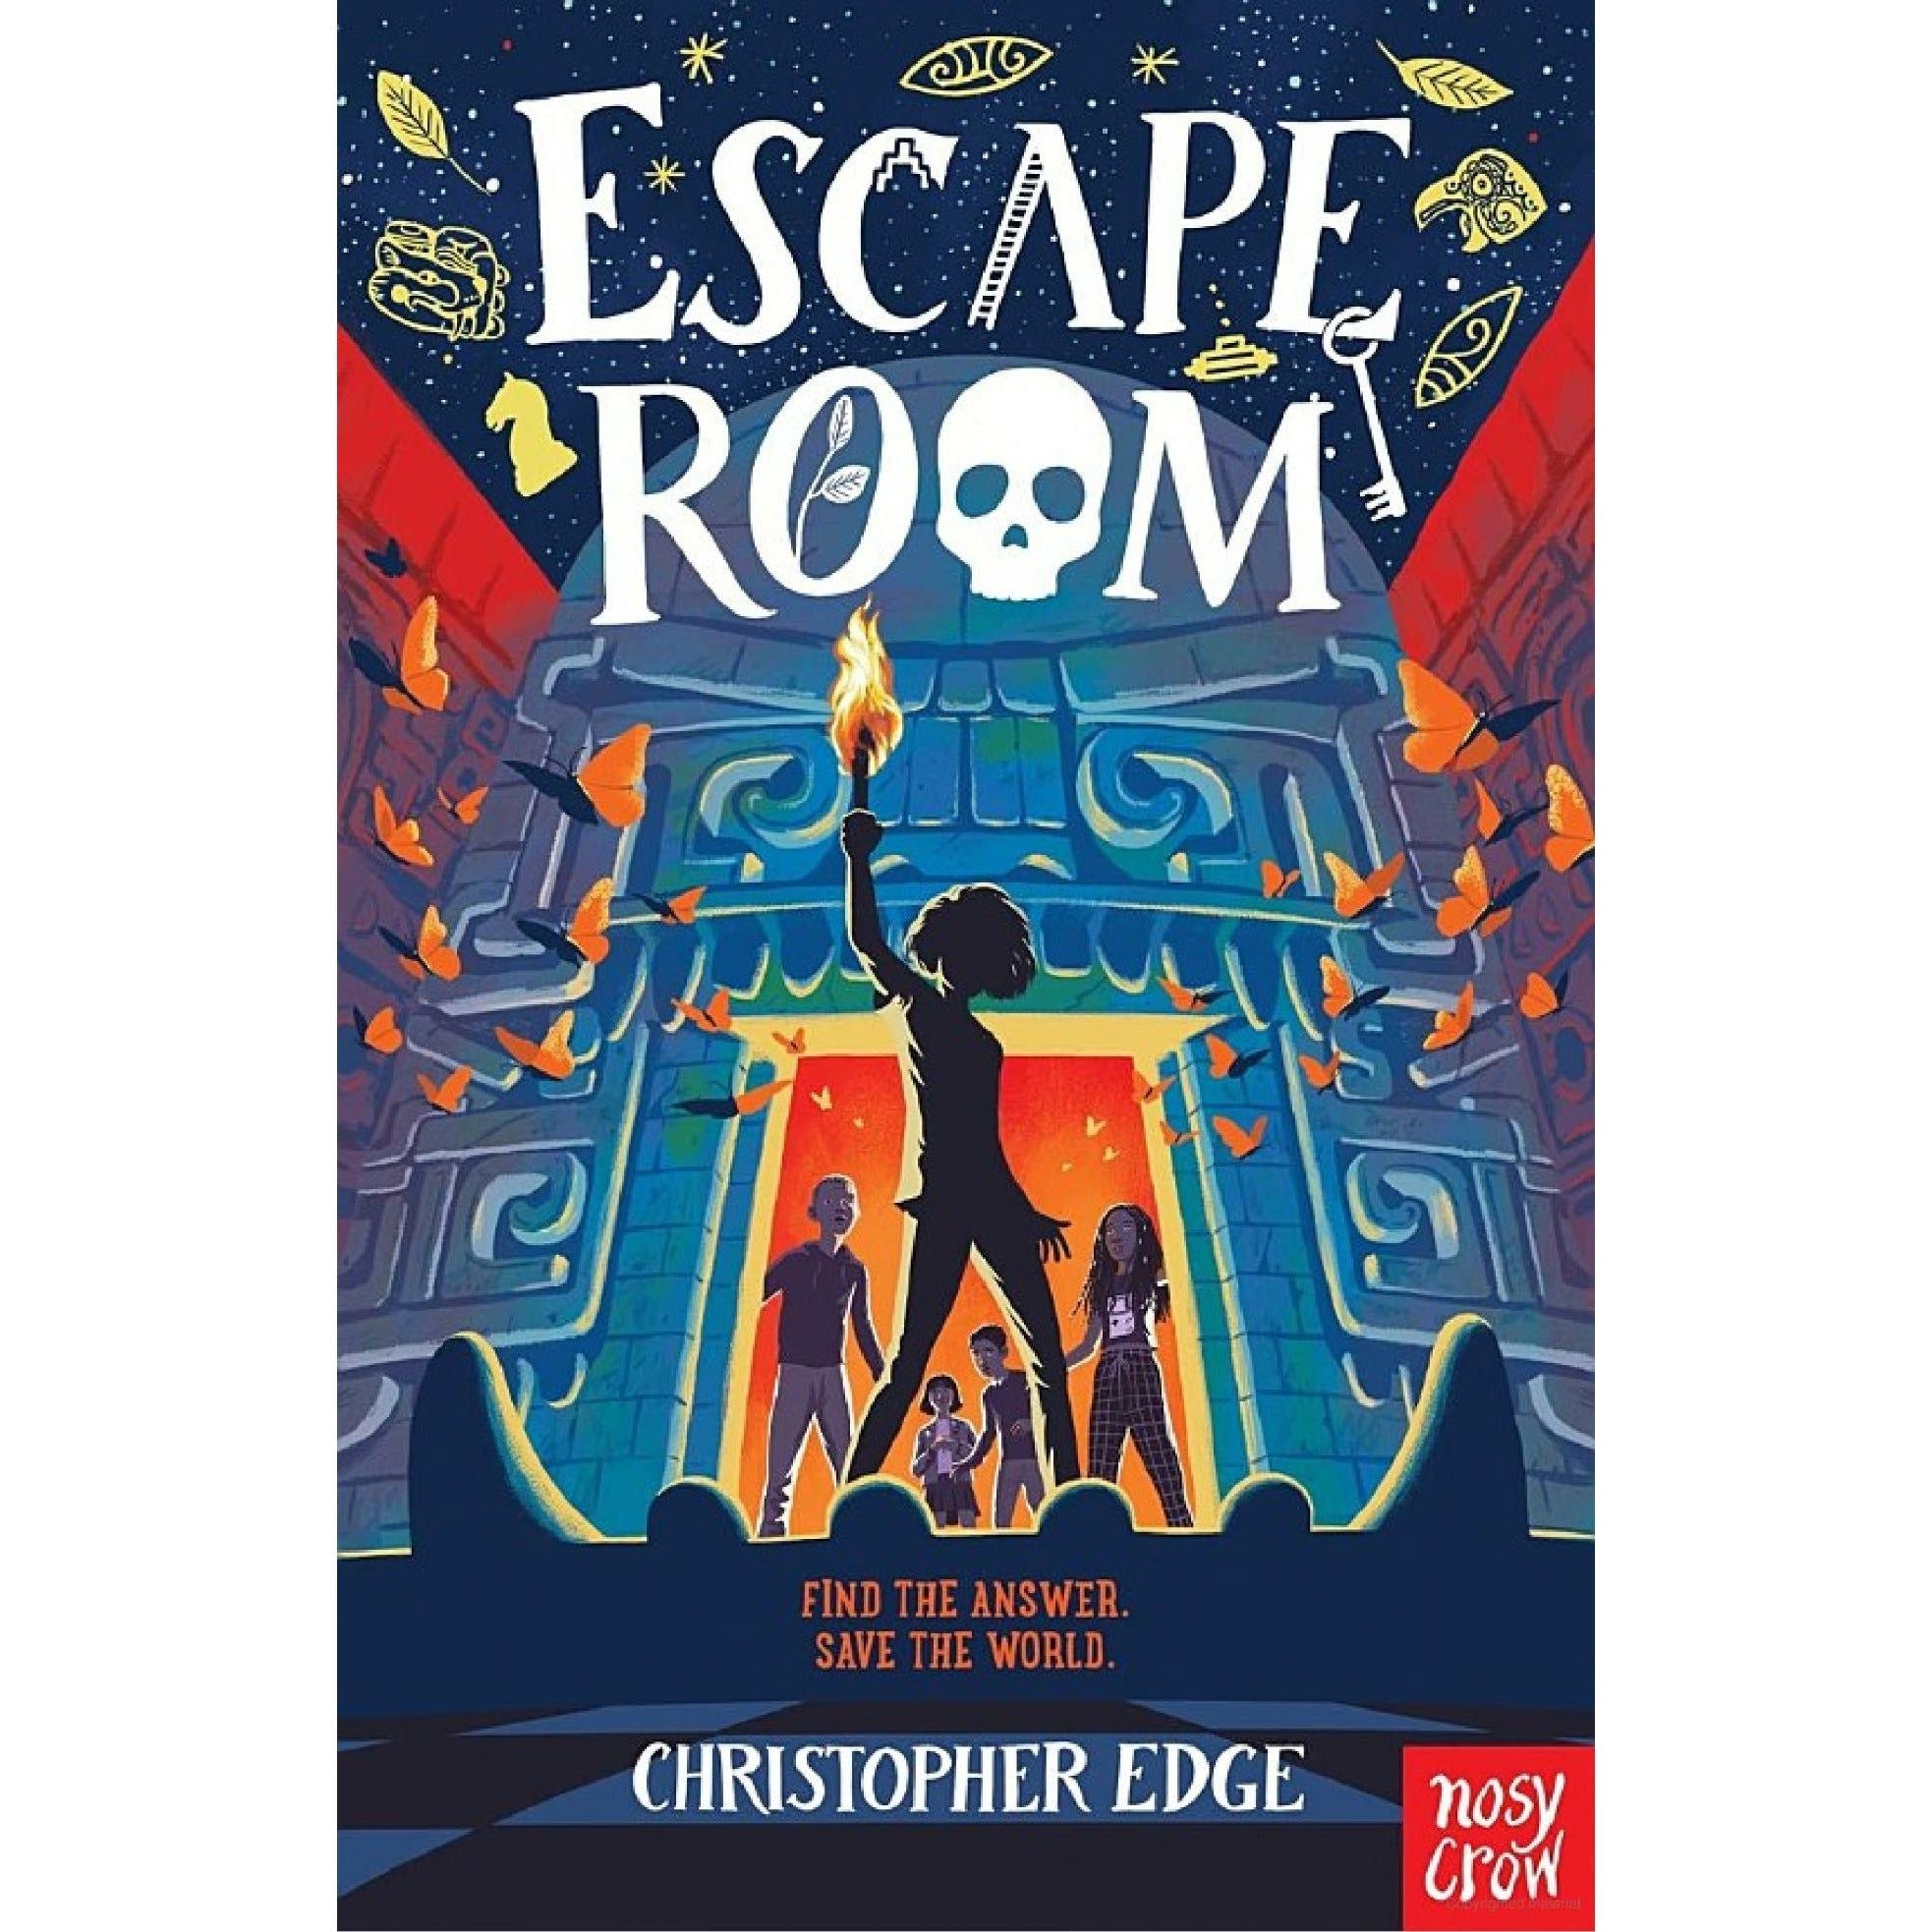 Escape Room - Christopher Edge